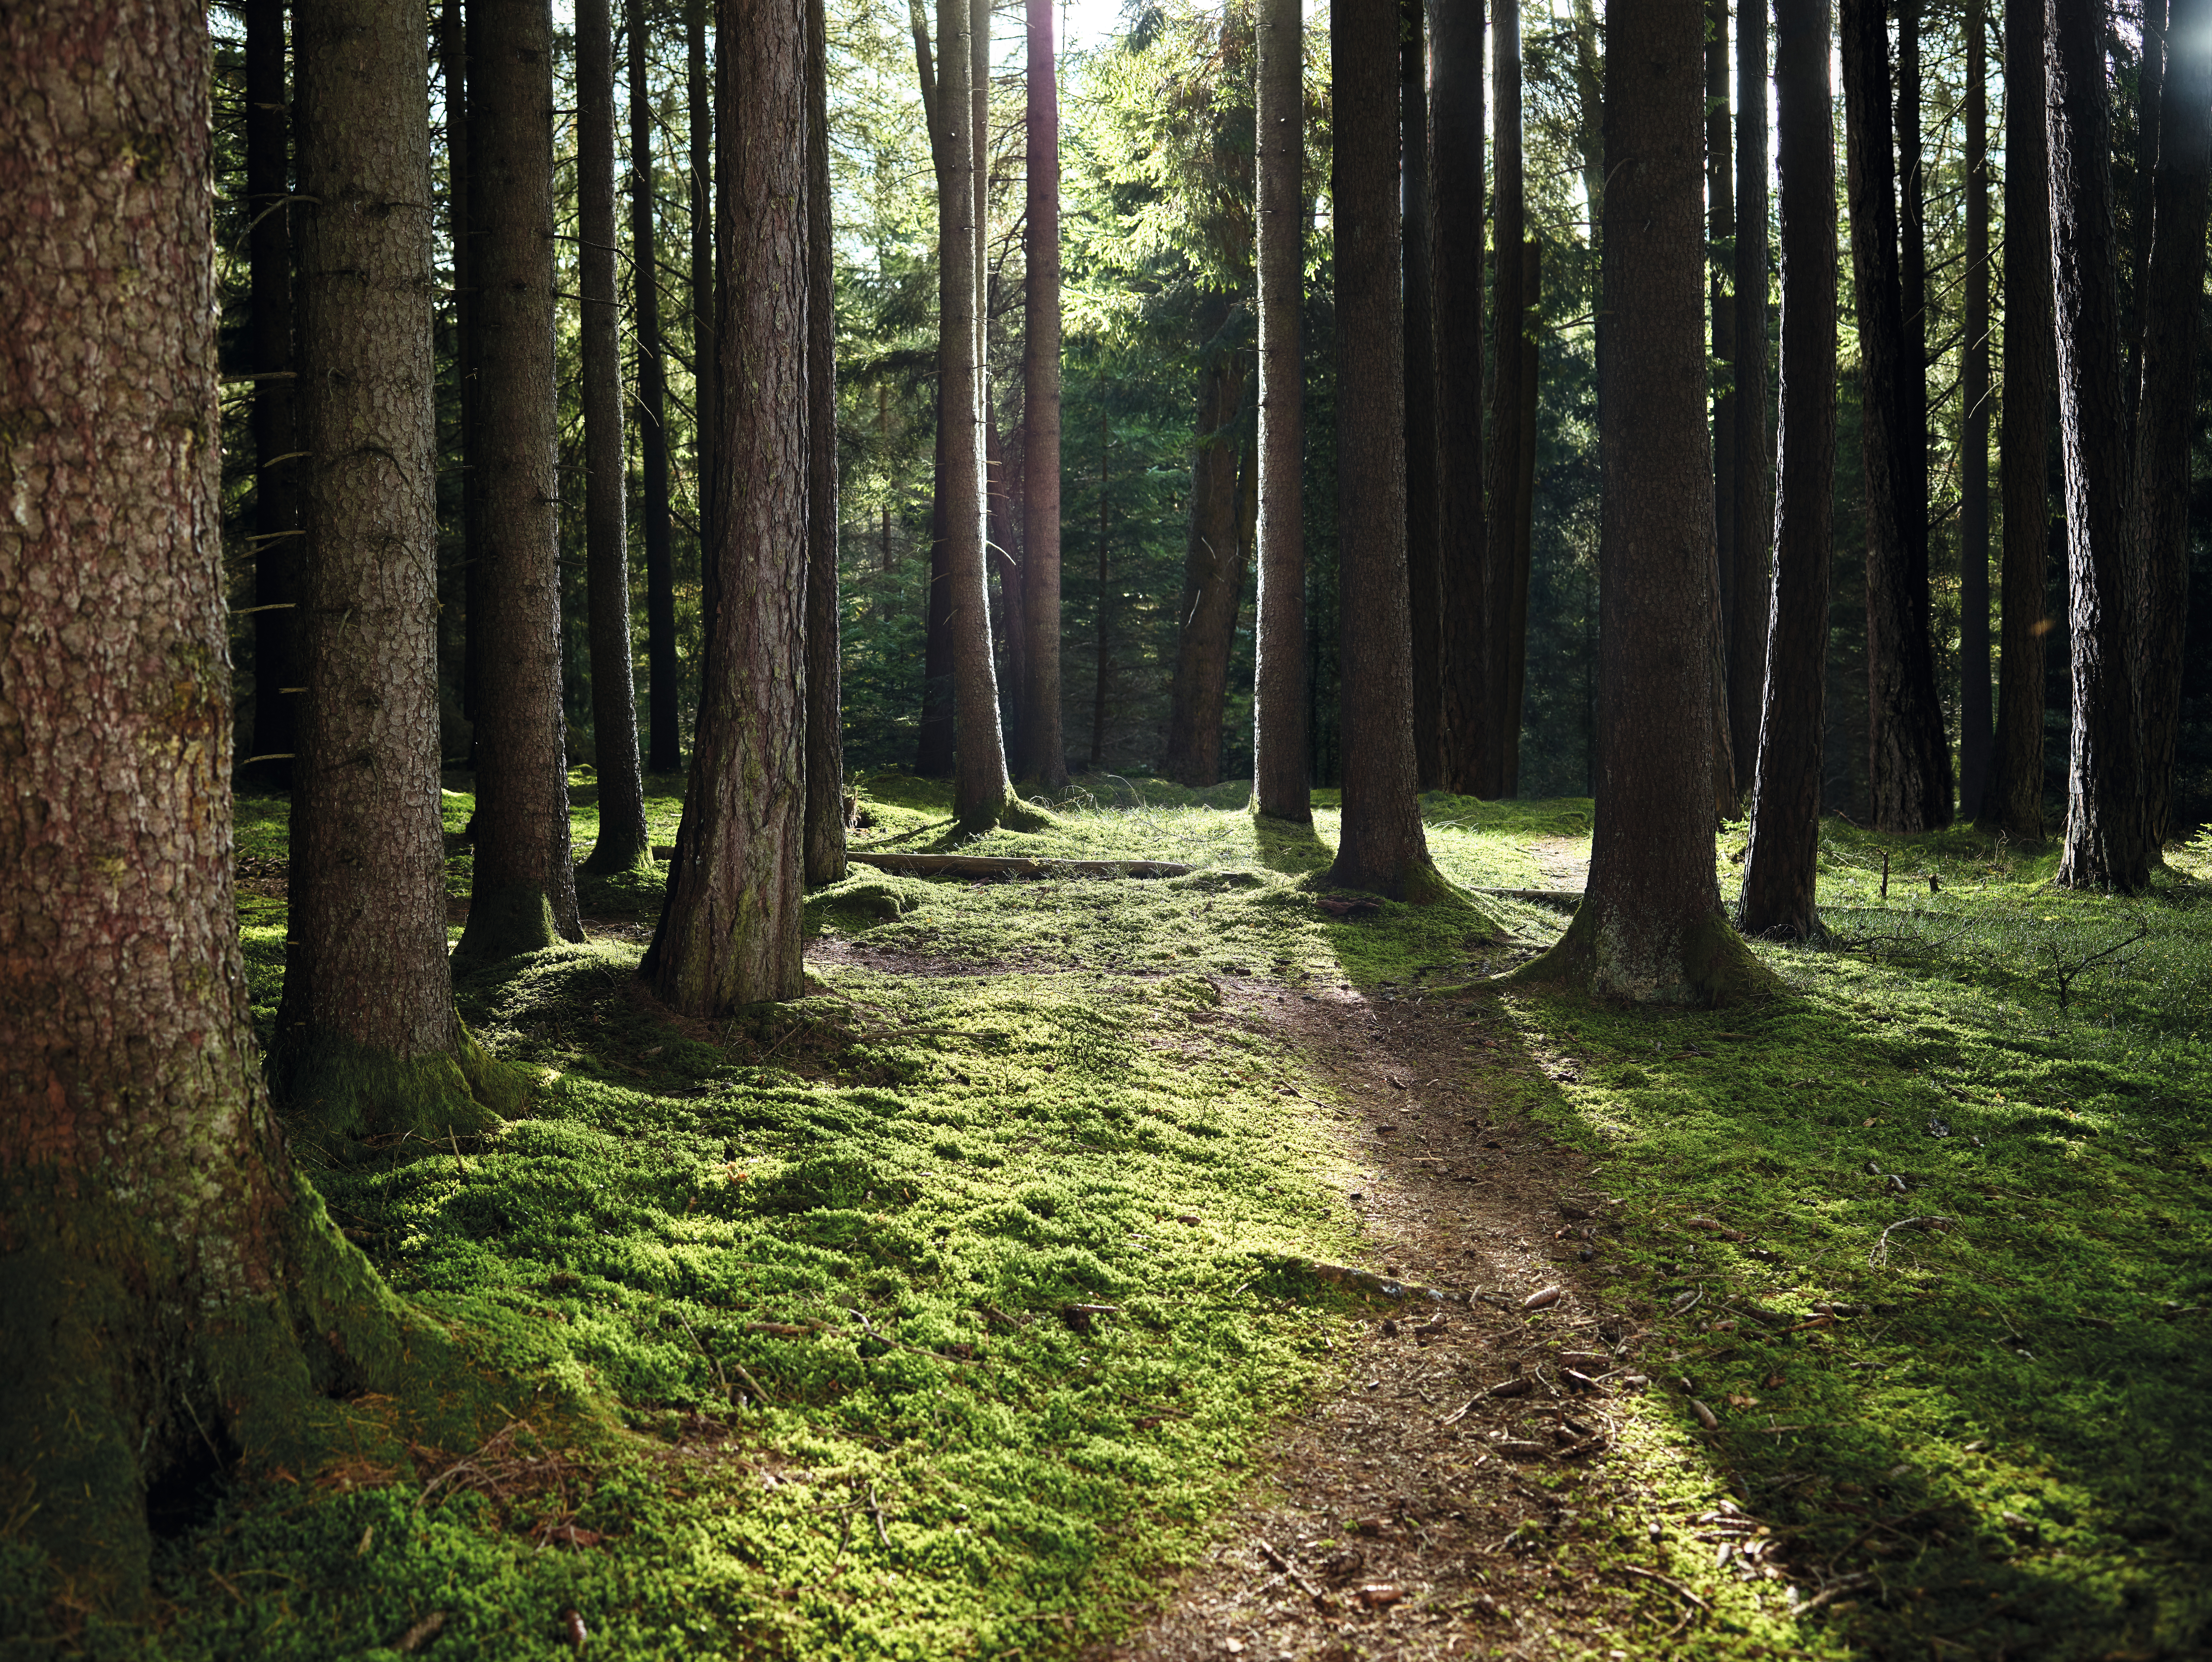 Poput šume, EGGER laminatni pod ima negativan CO2 otisak.